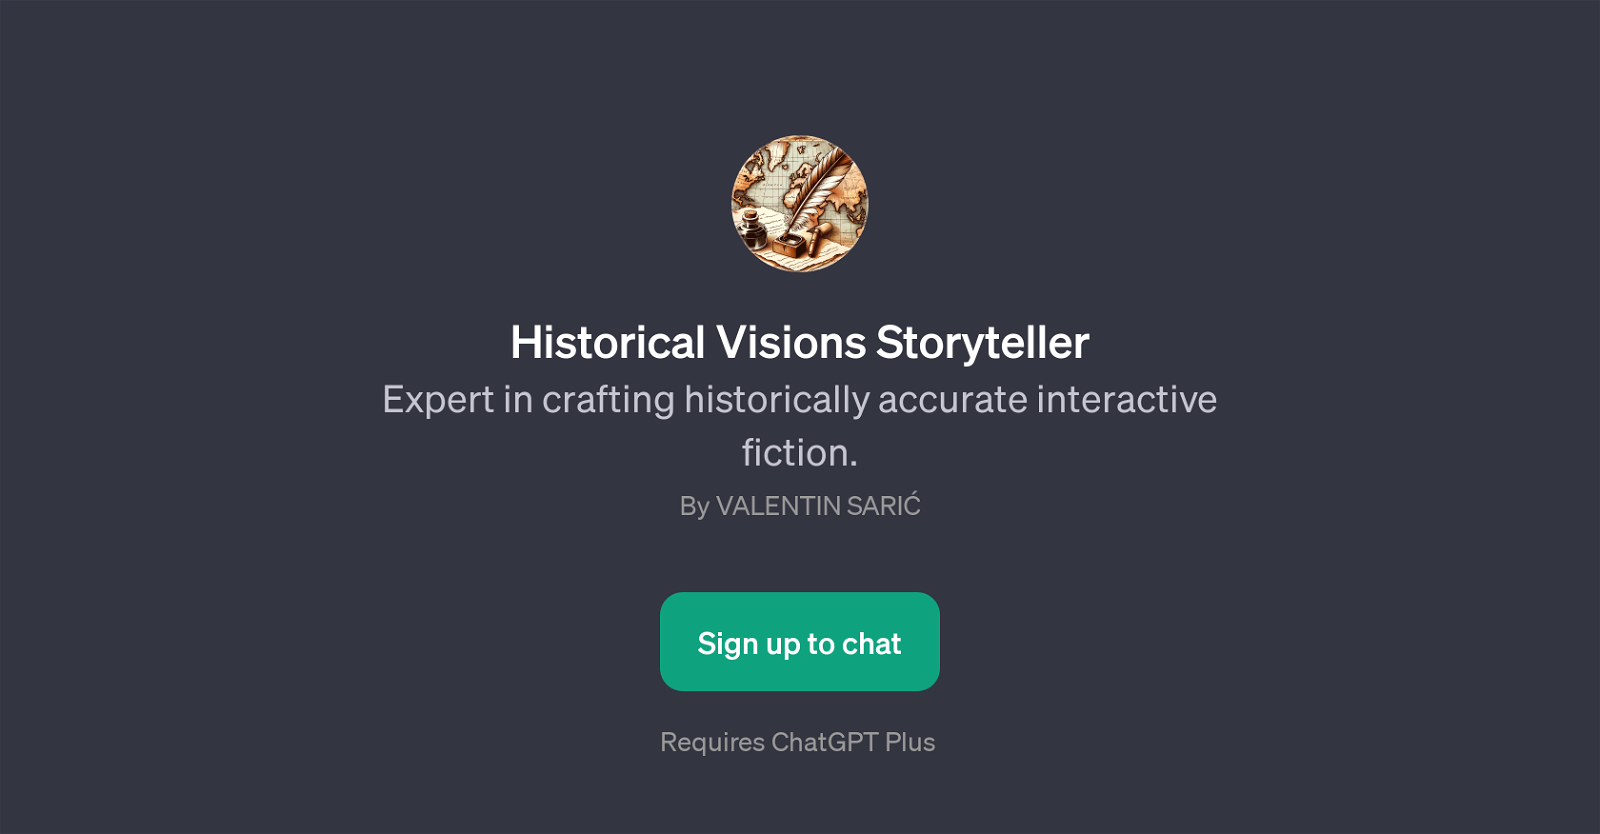 Historical Visions Storyteller website